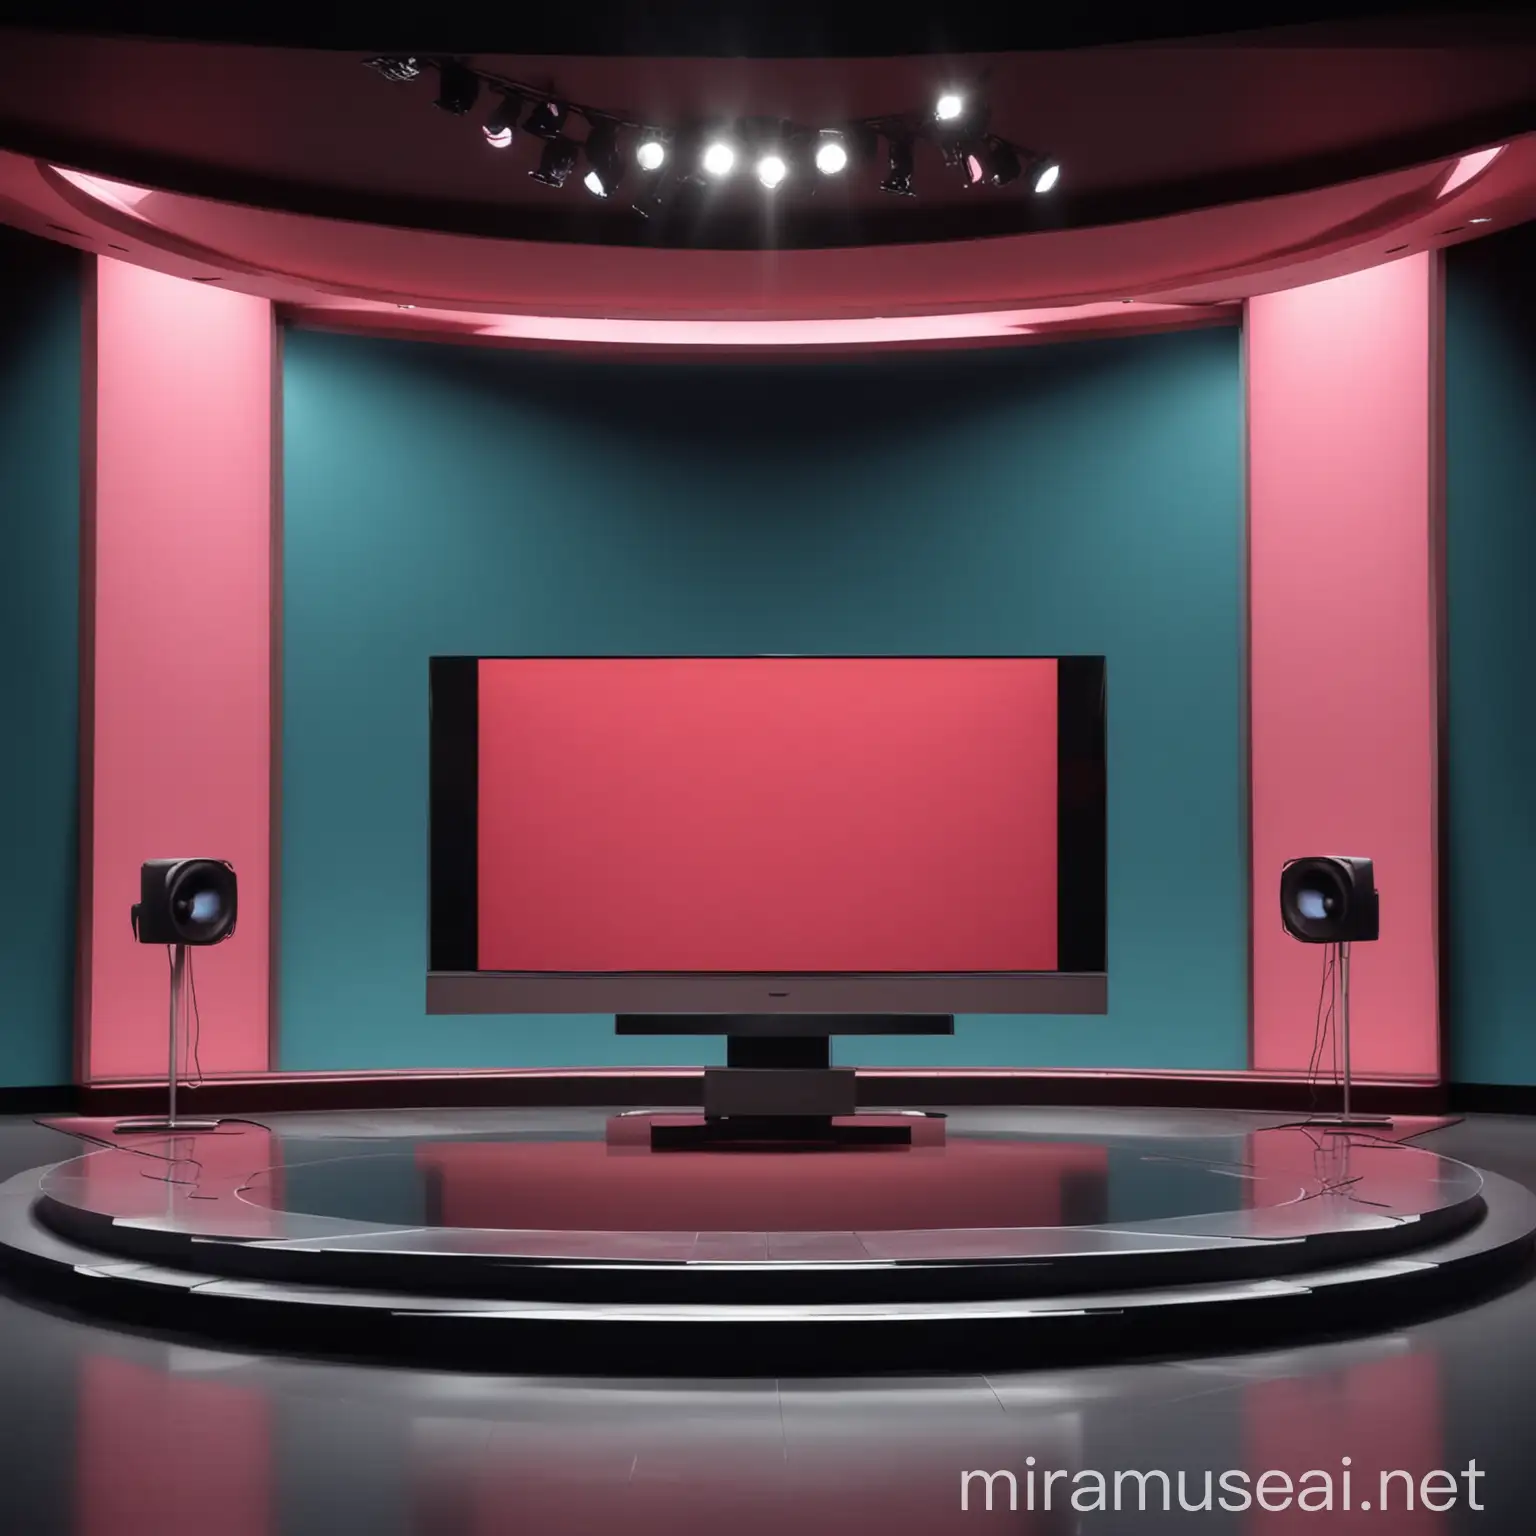 modern minimalistic TV set design debate talk show, wide landscape shot, round middle stage, vibrant background color.